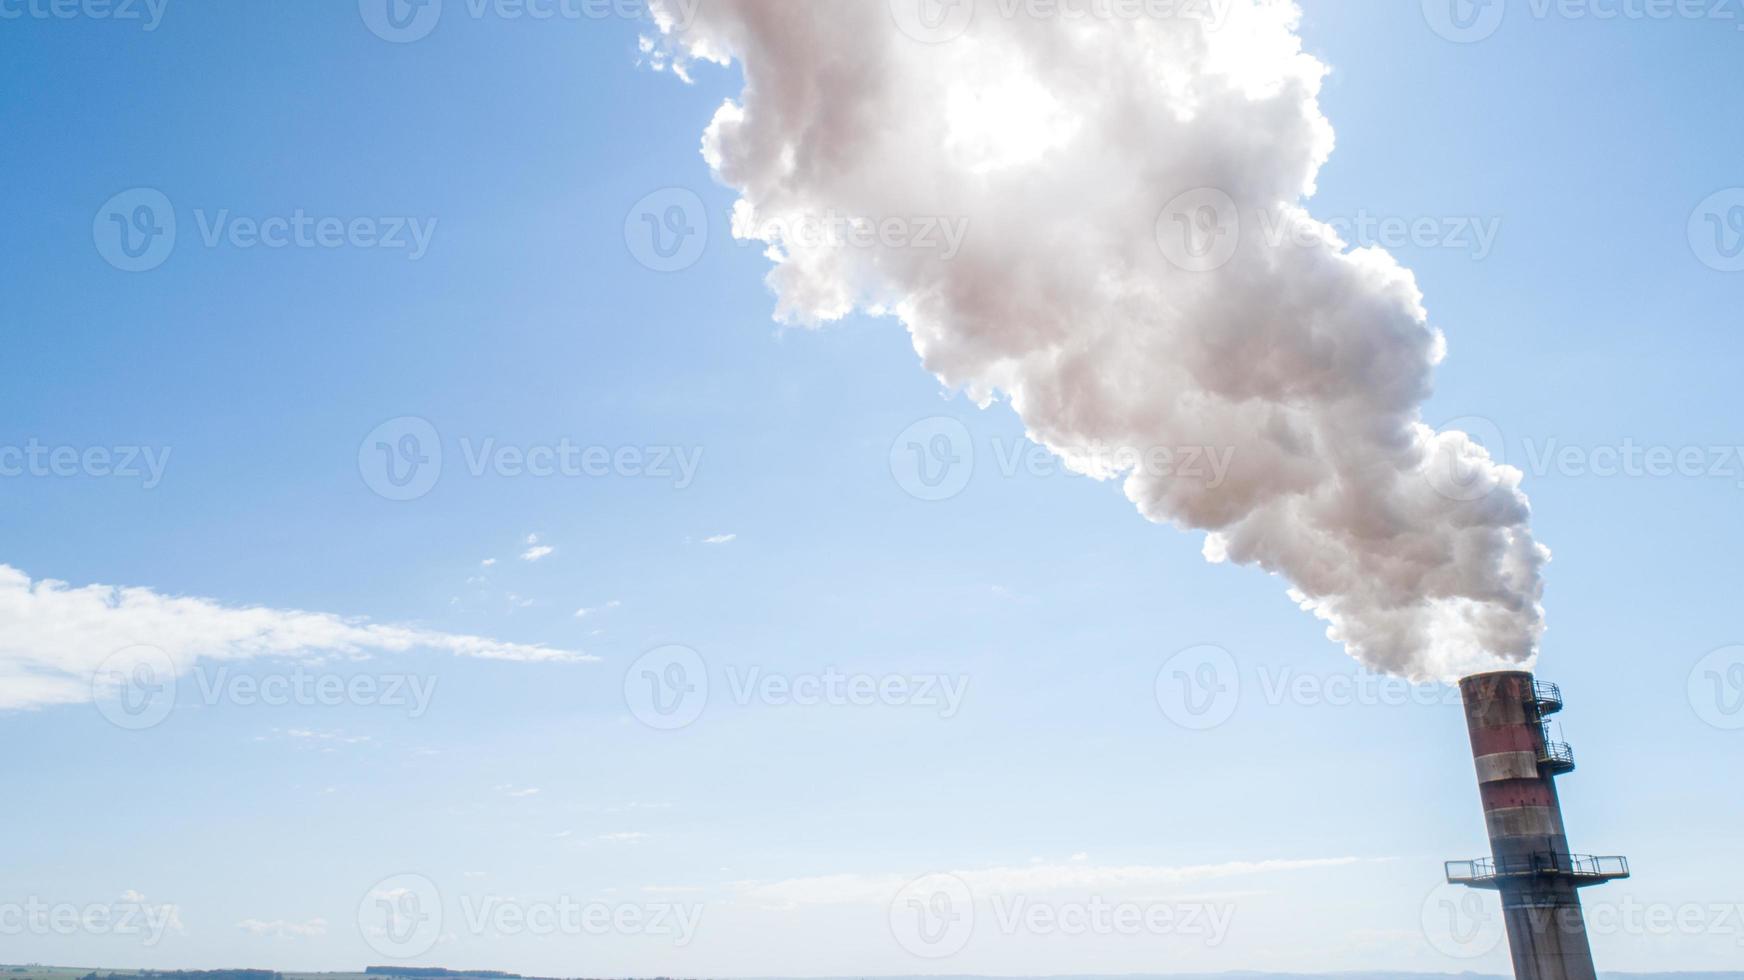 contaminación del aire de la chimenea de la planta de energía. humo sucio en el cielo, problemas ecológicos. foto